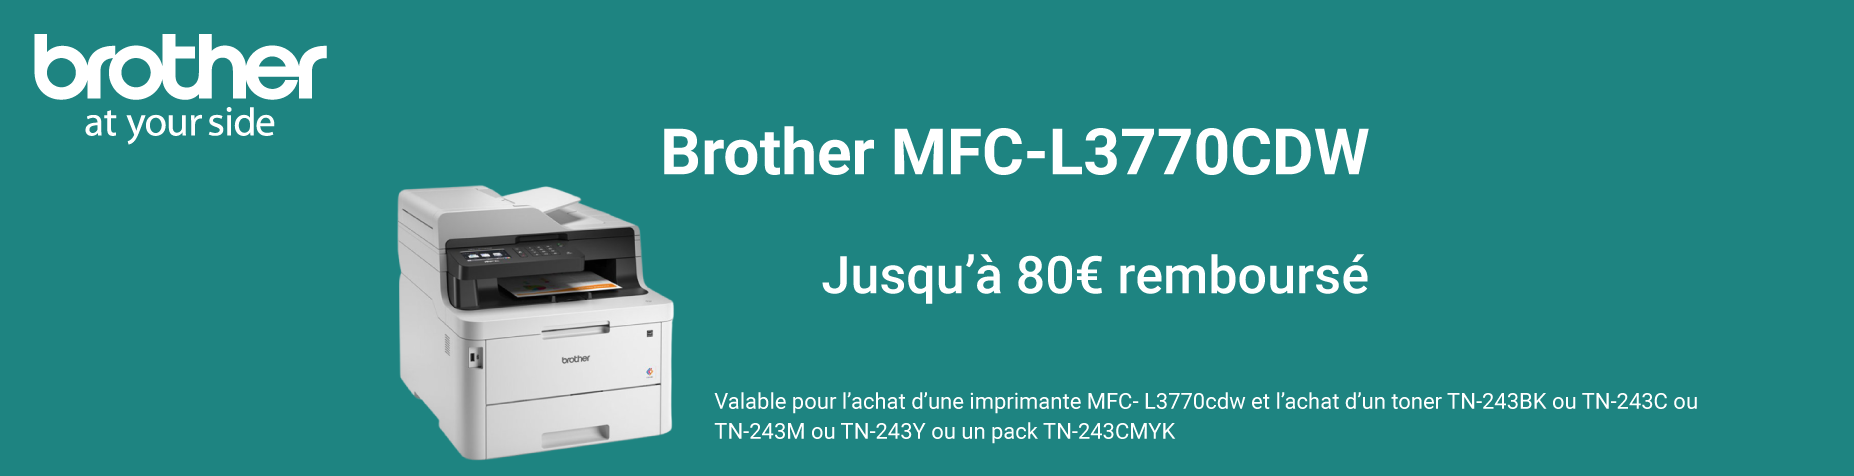 Découvrez la Brother MFC-L3770CDW